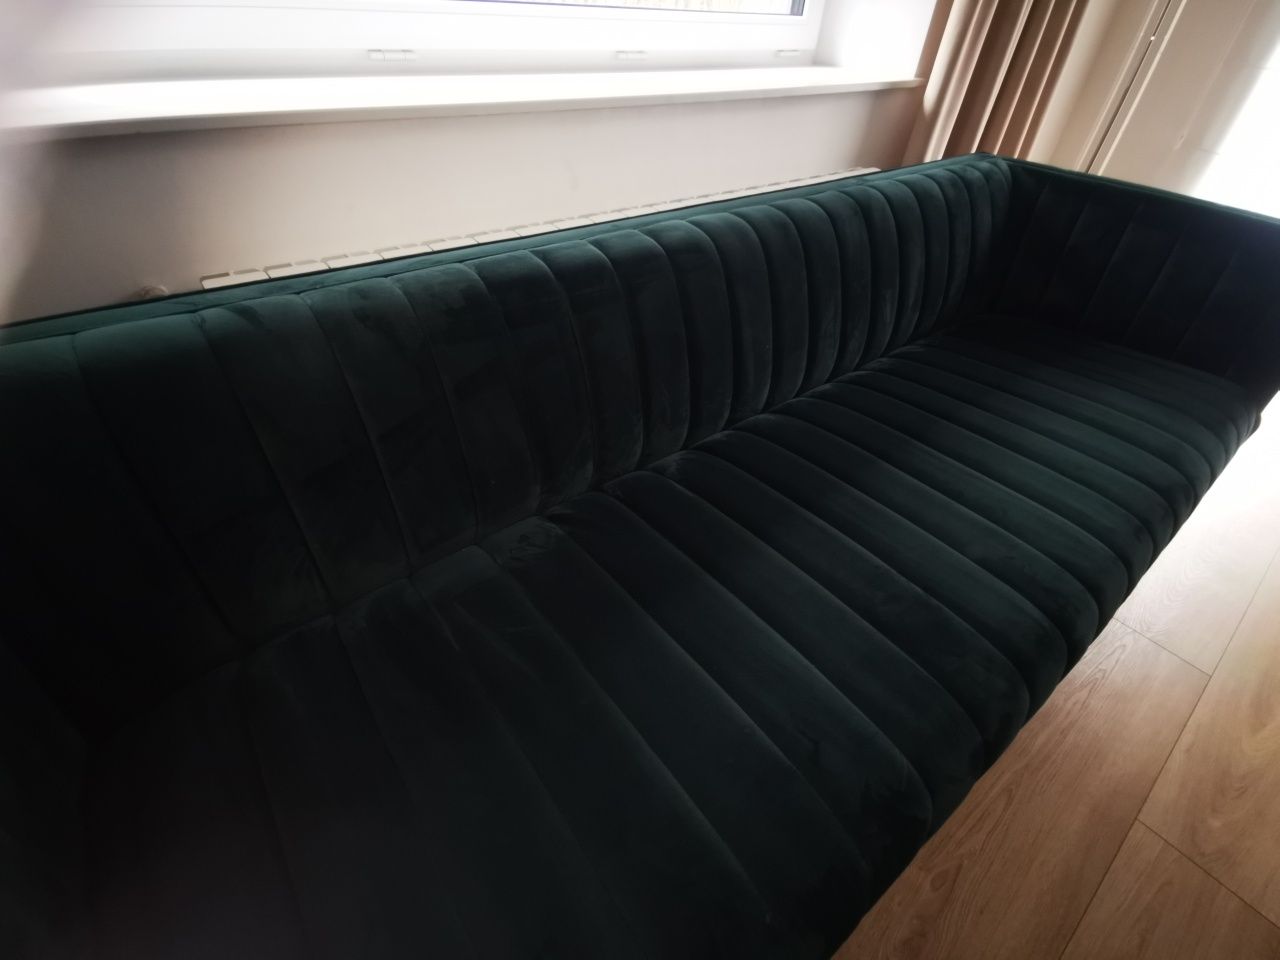 Sofa stylowa kanapa  velvet butelkowa zieleń  NOWA